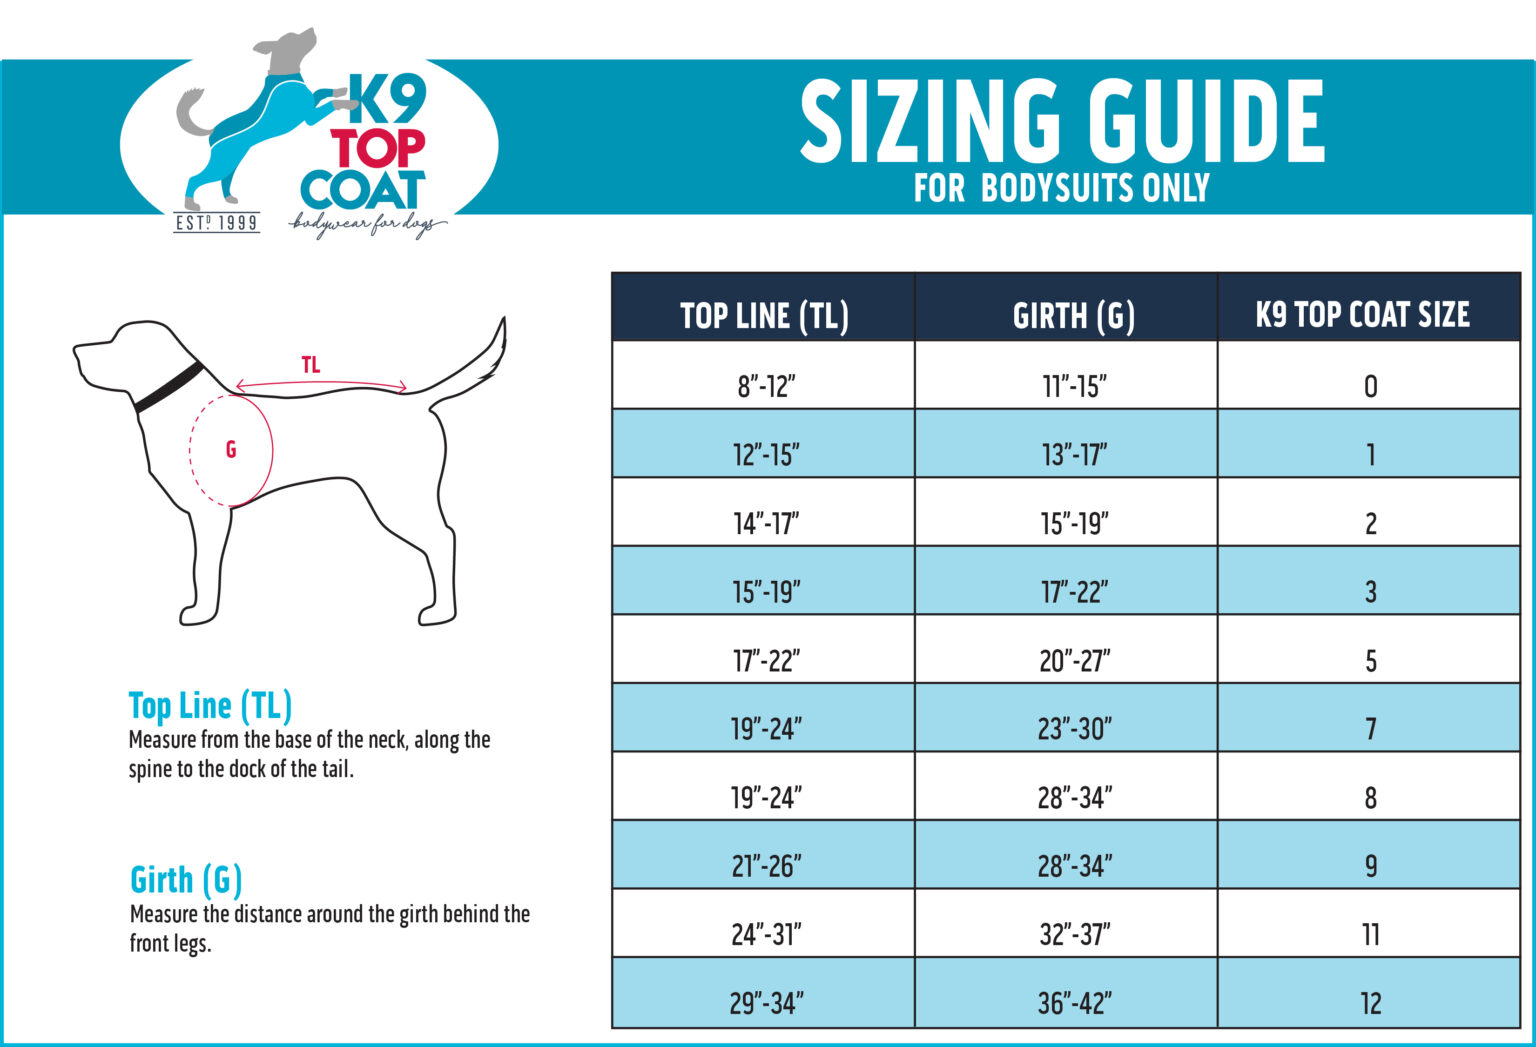 Size Gallery - K9 Top Coat